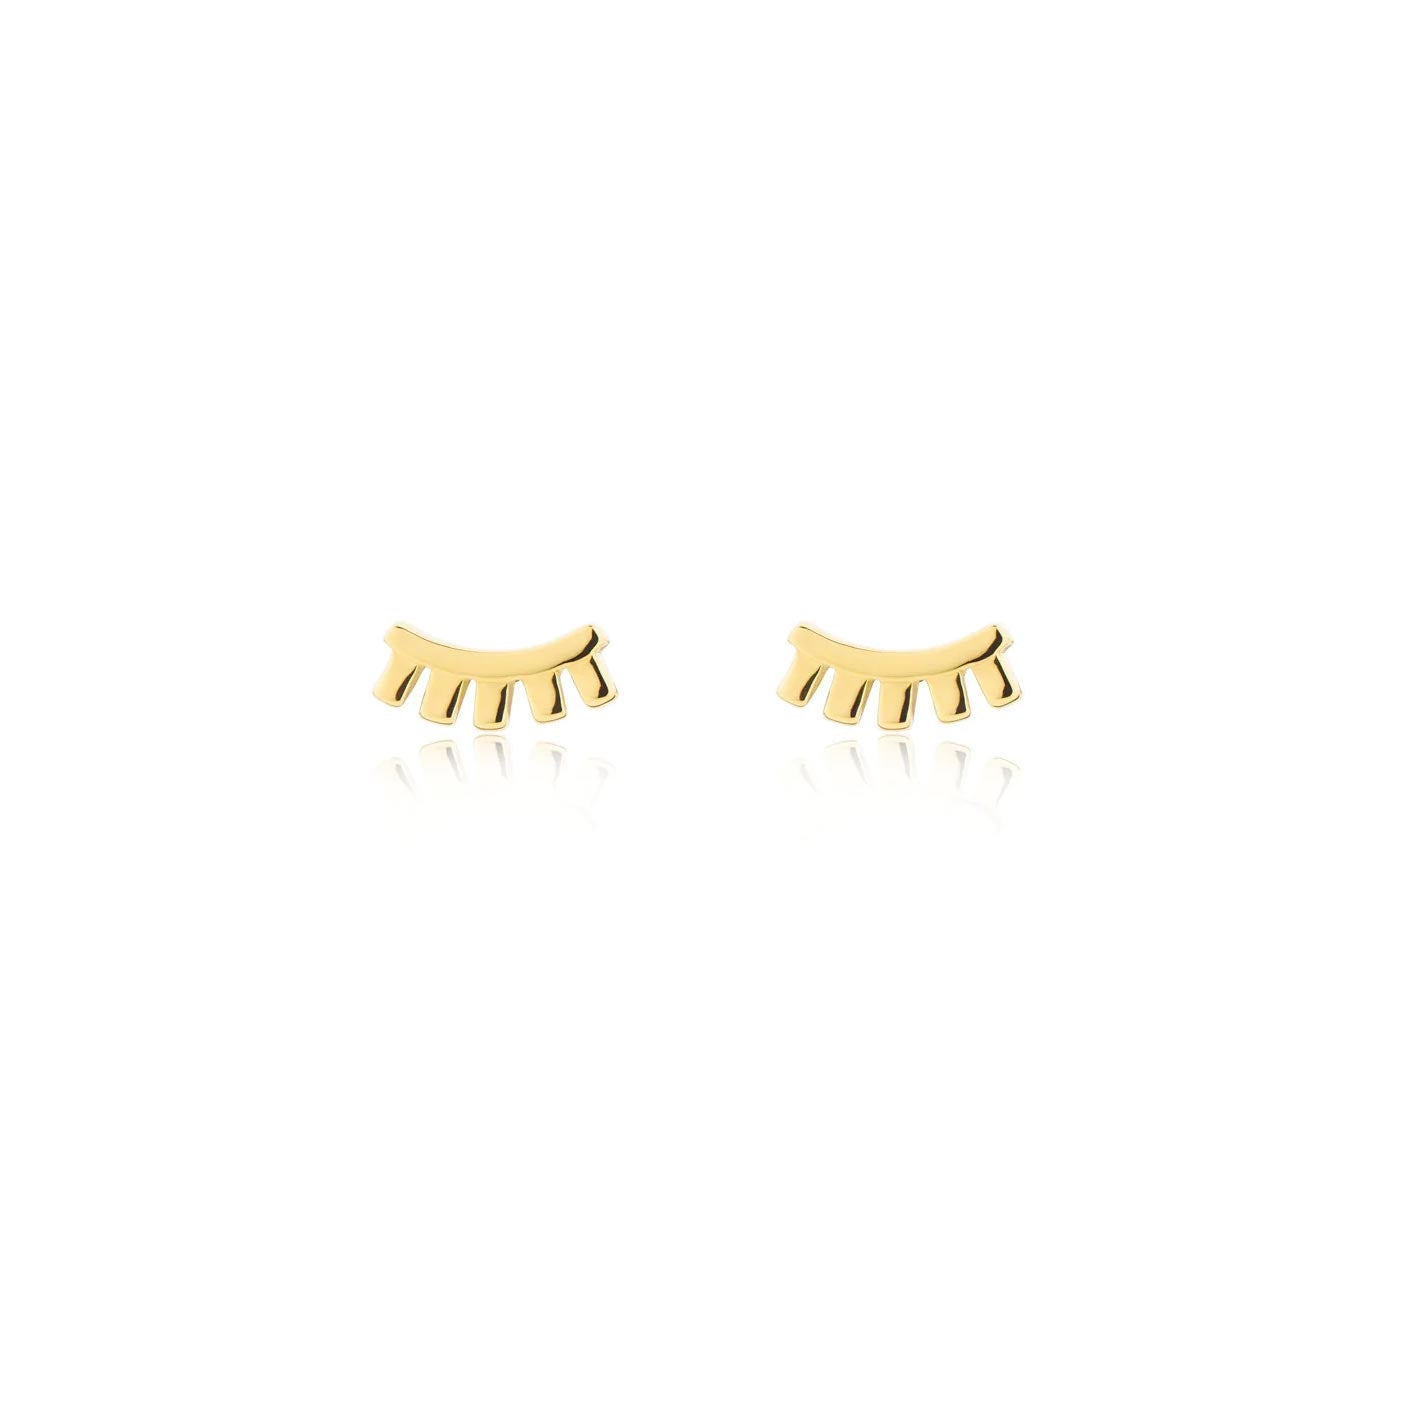 Linda Tahija Wink Stud Earrings - Gold | Koop.co.nz